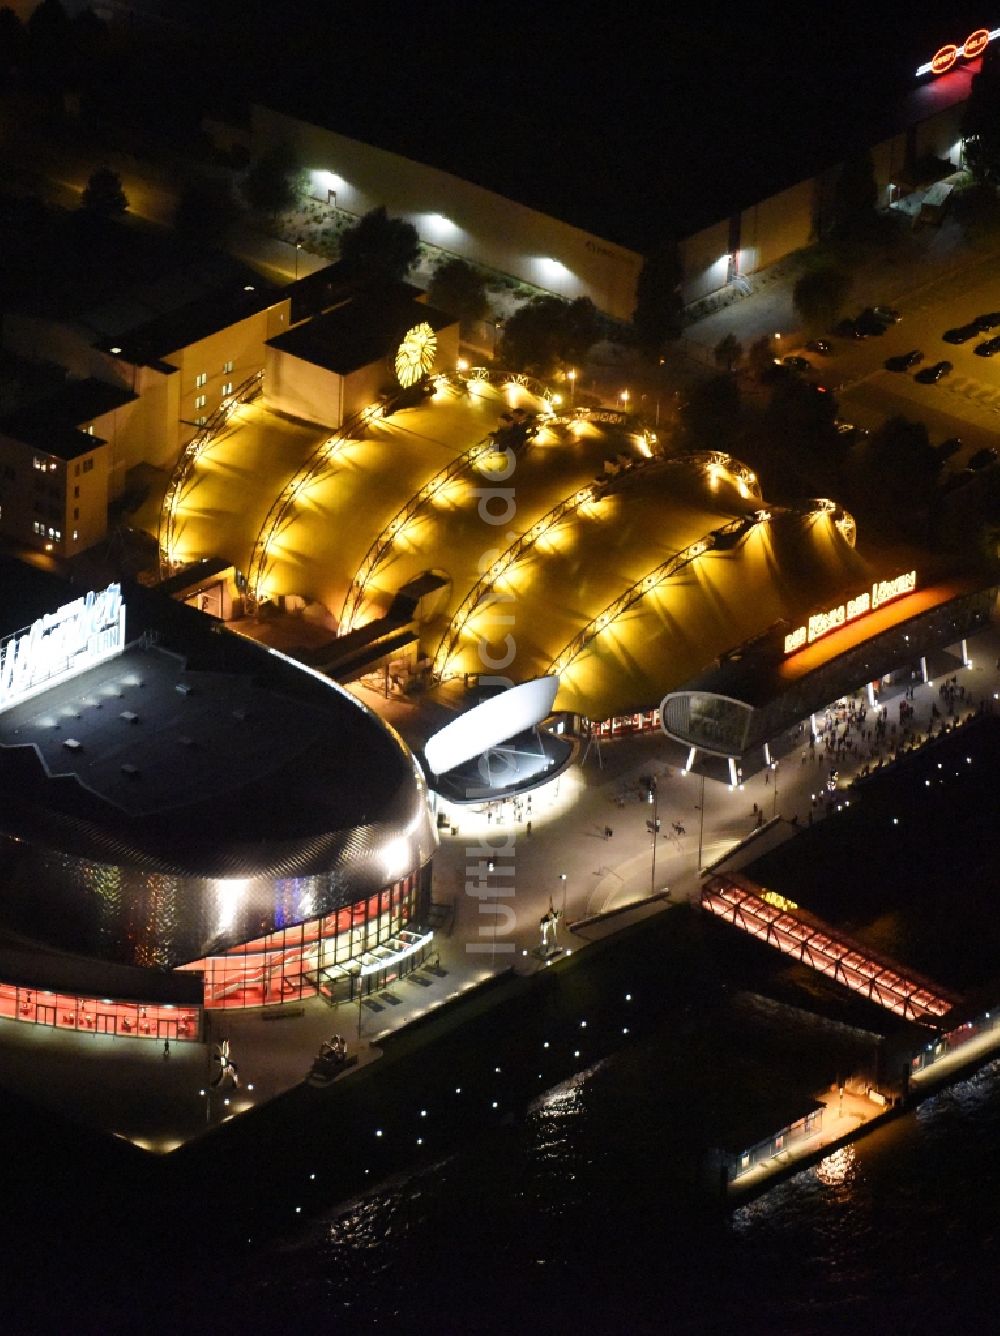 Hamburg bei Nacht aus der Vogelperspektive: Nacht- Beleuchtung am Musicaltheater von Stage Entertainment am Ufer der Elbe in Steinwerder in Hamburg